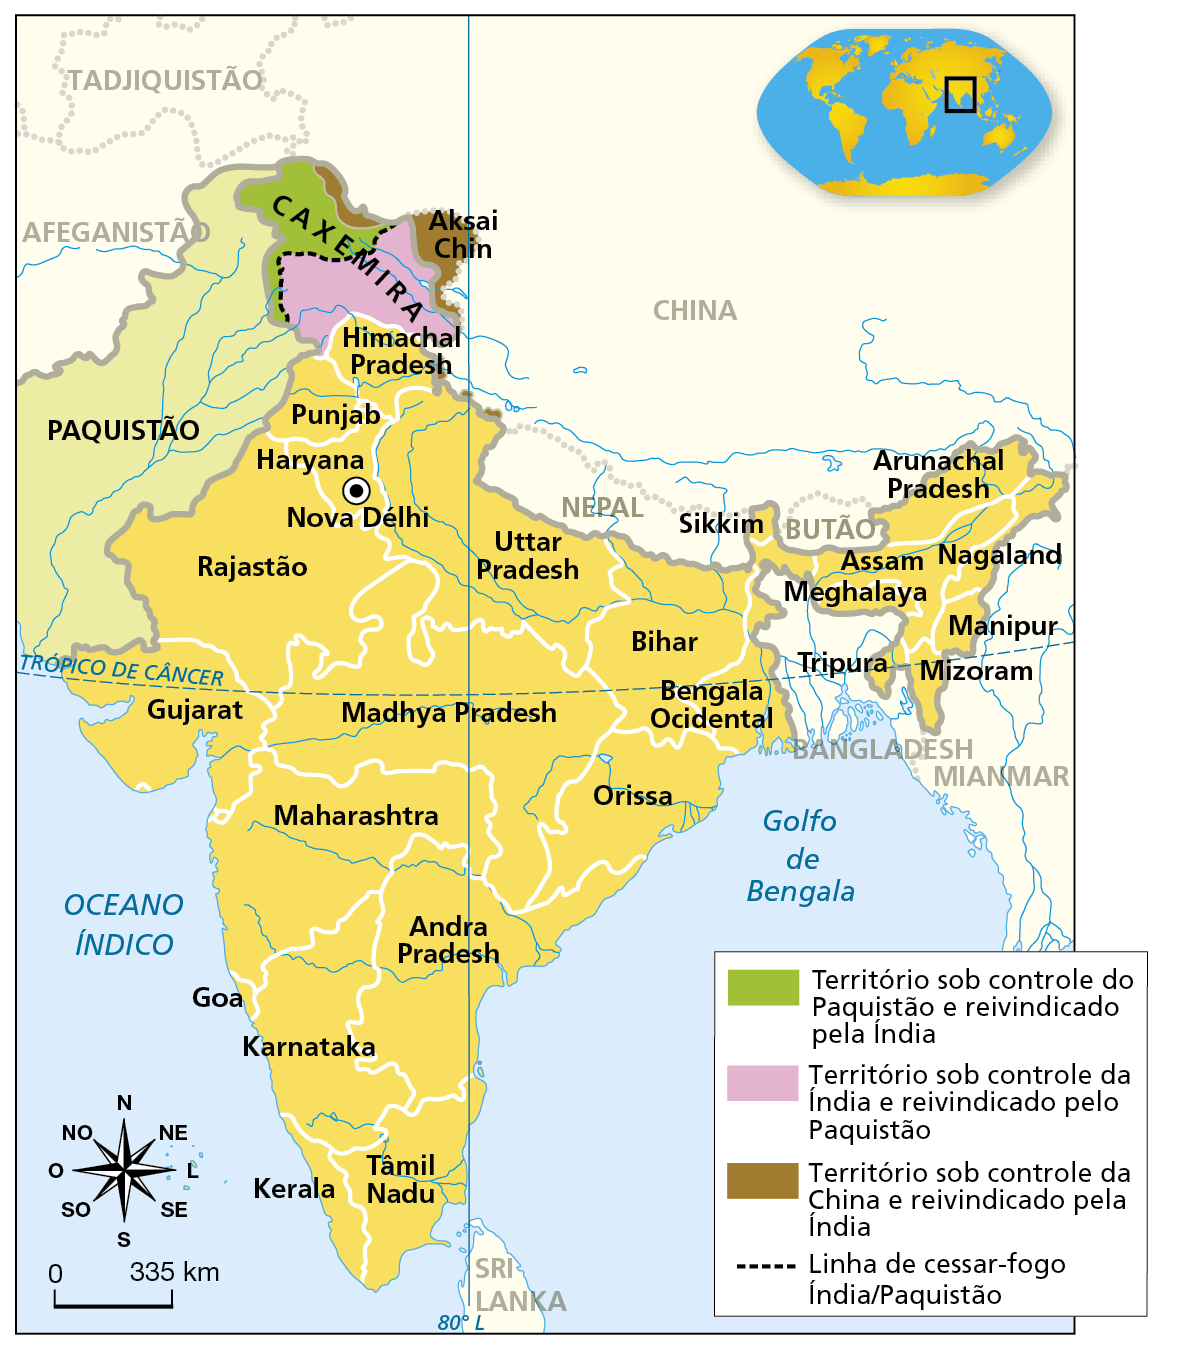 Mapa. Índia: político. Mapa representando a divisão política na Índia e os territórios em disputa na região. A Índia faz fronteira a oeste com o Paquistão e ao norte com China e Nepal. A nordeste, o território da Índia avança e forma uma área que faz fronteira com Bangladesh, Mianmar, Butão e China. O território indiano é formado pelas províncias de Tâmil Nadu e Kerala no extremo sul, Goa, Karnataka e Andra Pradesh ao sul, Maharashtra e Madhya Pradesh no centro, Gujarat a oeste, Rajastão, Haryana, Punjab e Himadal Pradesh a noroeste, Uttar Pradesh ao norte, Orissa a leste e, na porção nordeste, as províncias Bihar, Sikkin, Meghalaya, Tripura, Mizoram, Manipur, Nagaland, Assam e Arunachal Pradesh. Território sob controle do Paquistão e reivindicado pela Índia: área na porção noroeste da Caxemira. Território sob controle da Índia e reivindicado pelo Paquistão: área na porção sudeste e central da Caxemira. Território sob controle da China e reivindicado pela Índia: faixa na porção da Caxemira que faz fronteira com a China e denominada Aksai Chin. Linha de cessar-fogo Índia/Paquistão: linha que separa as porções noroeste e da sudeste da Caxemira. Na parte superior direita, mapa-múndi com destaque para a Índia. Na parte inferior esquerda, a rosa dos ventos e a escala de 0 a 335 quilômetros.